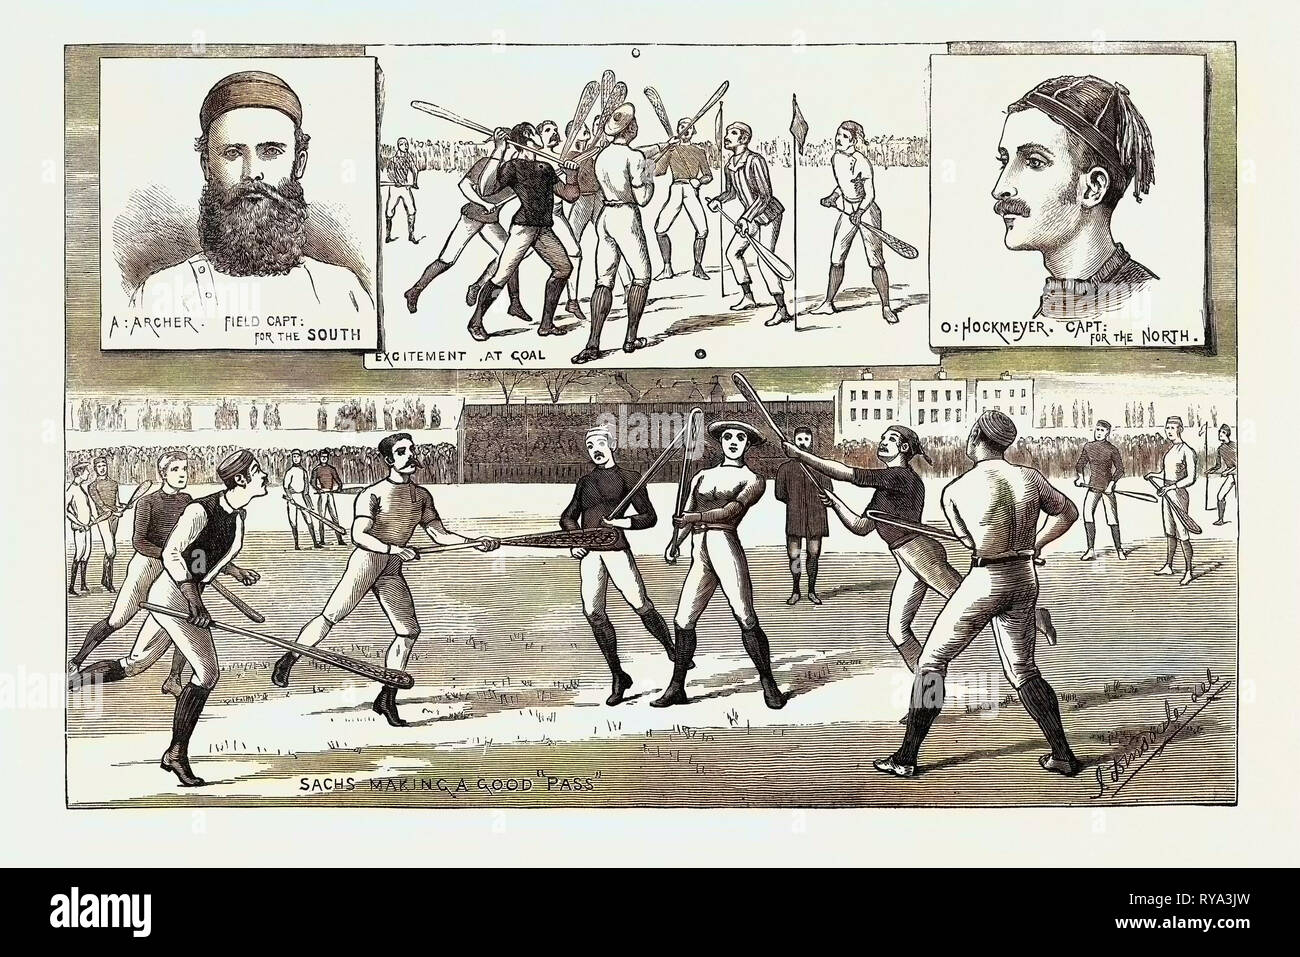 La Crosse partido disputado el pasado sábado en Kennington Oval, al norte de Inglaterra contra el Sur, 1883 Foto de stock